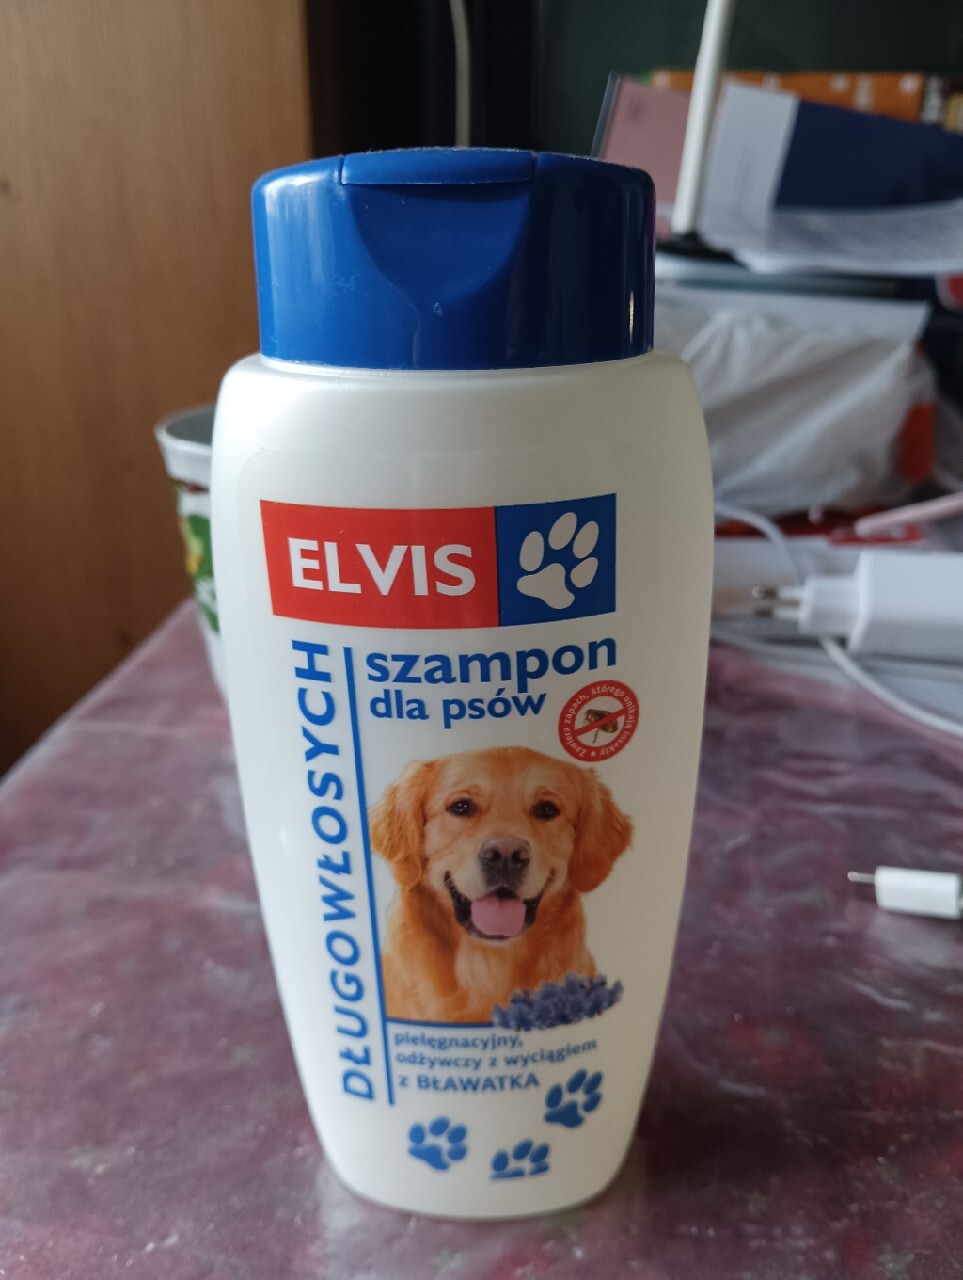 szampon dla psow elvis